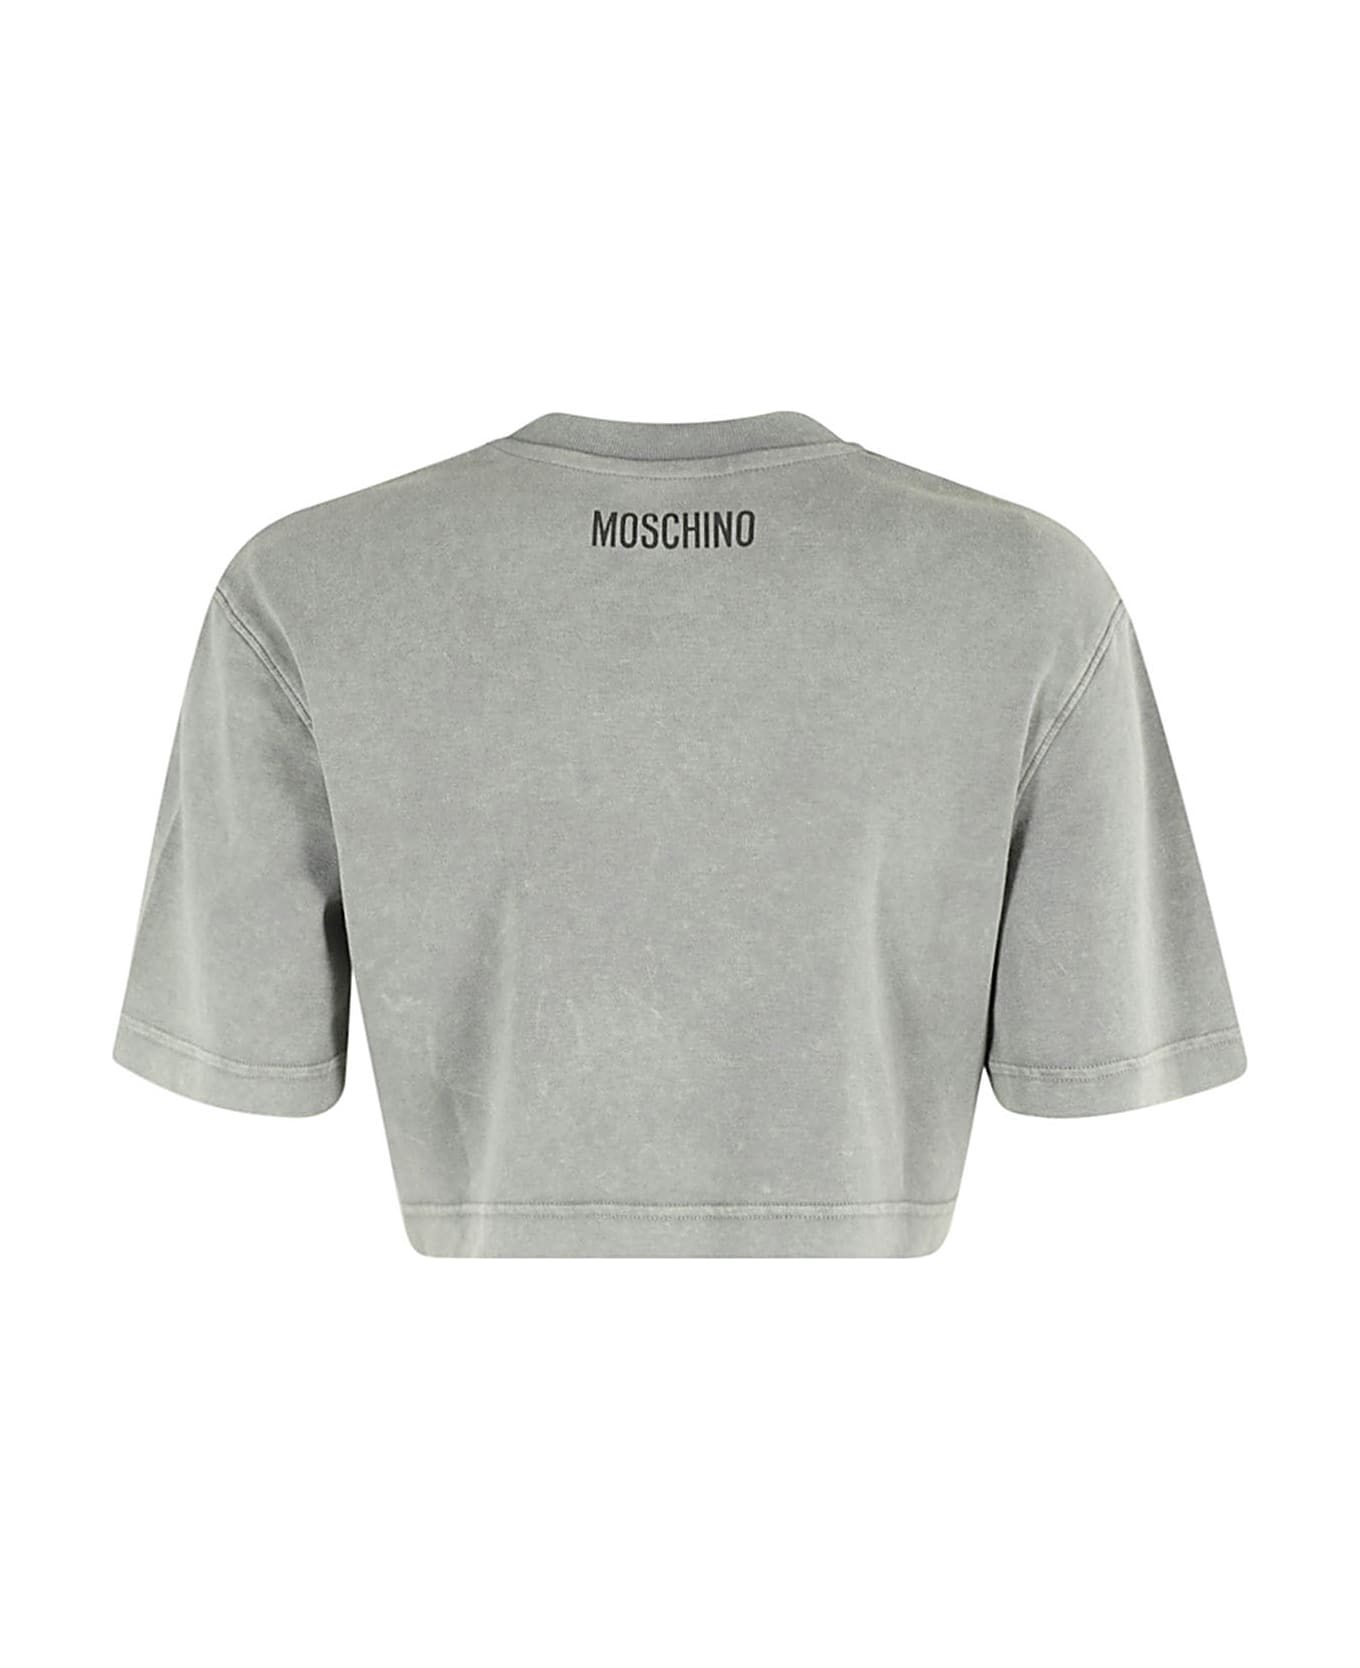 Moschino Interlock Di Cotone - Fantasia Variante Unica Tシャツ